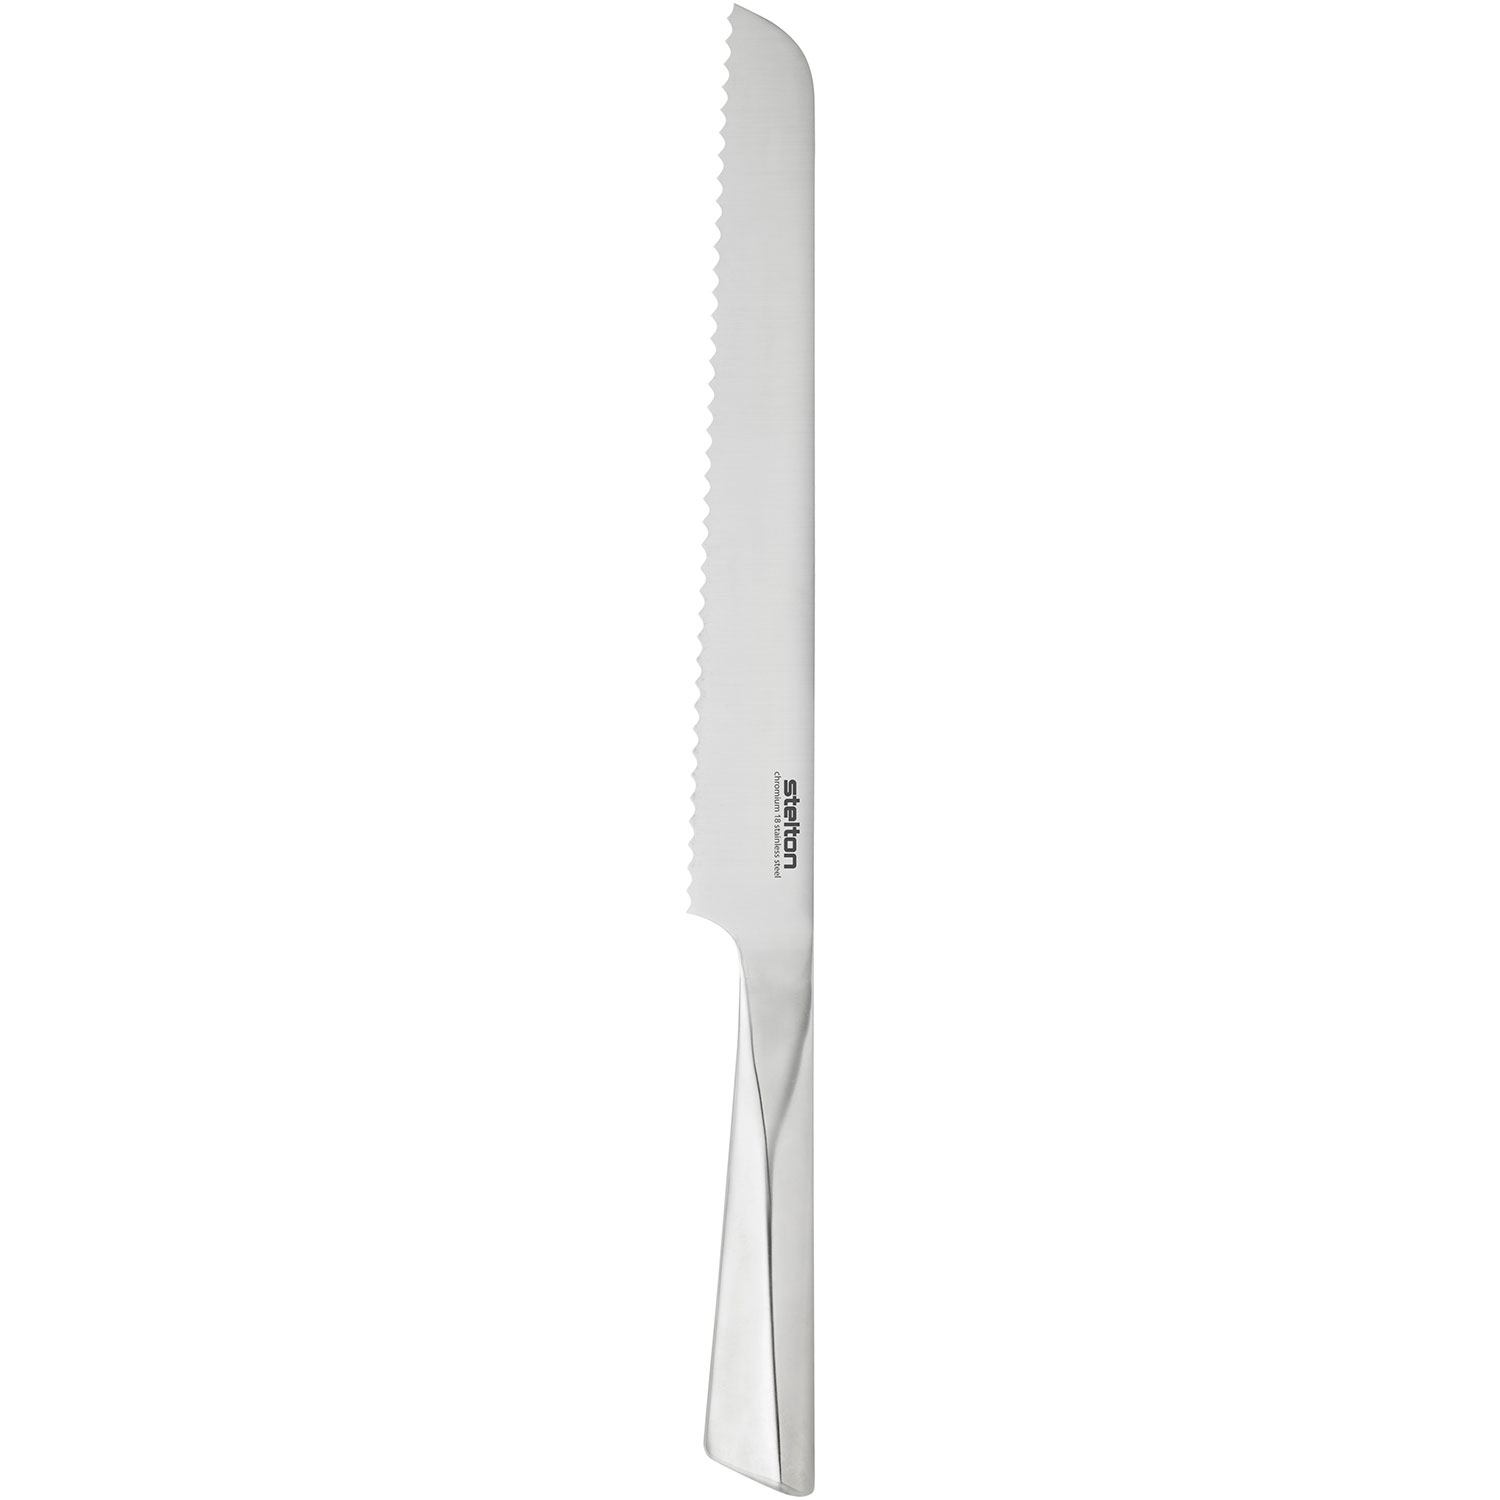 Stelton - Trigono bread knife L 38.5 cm steel